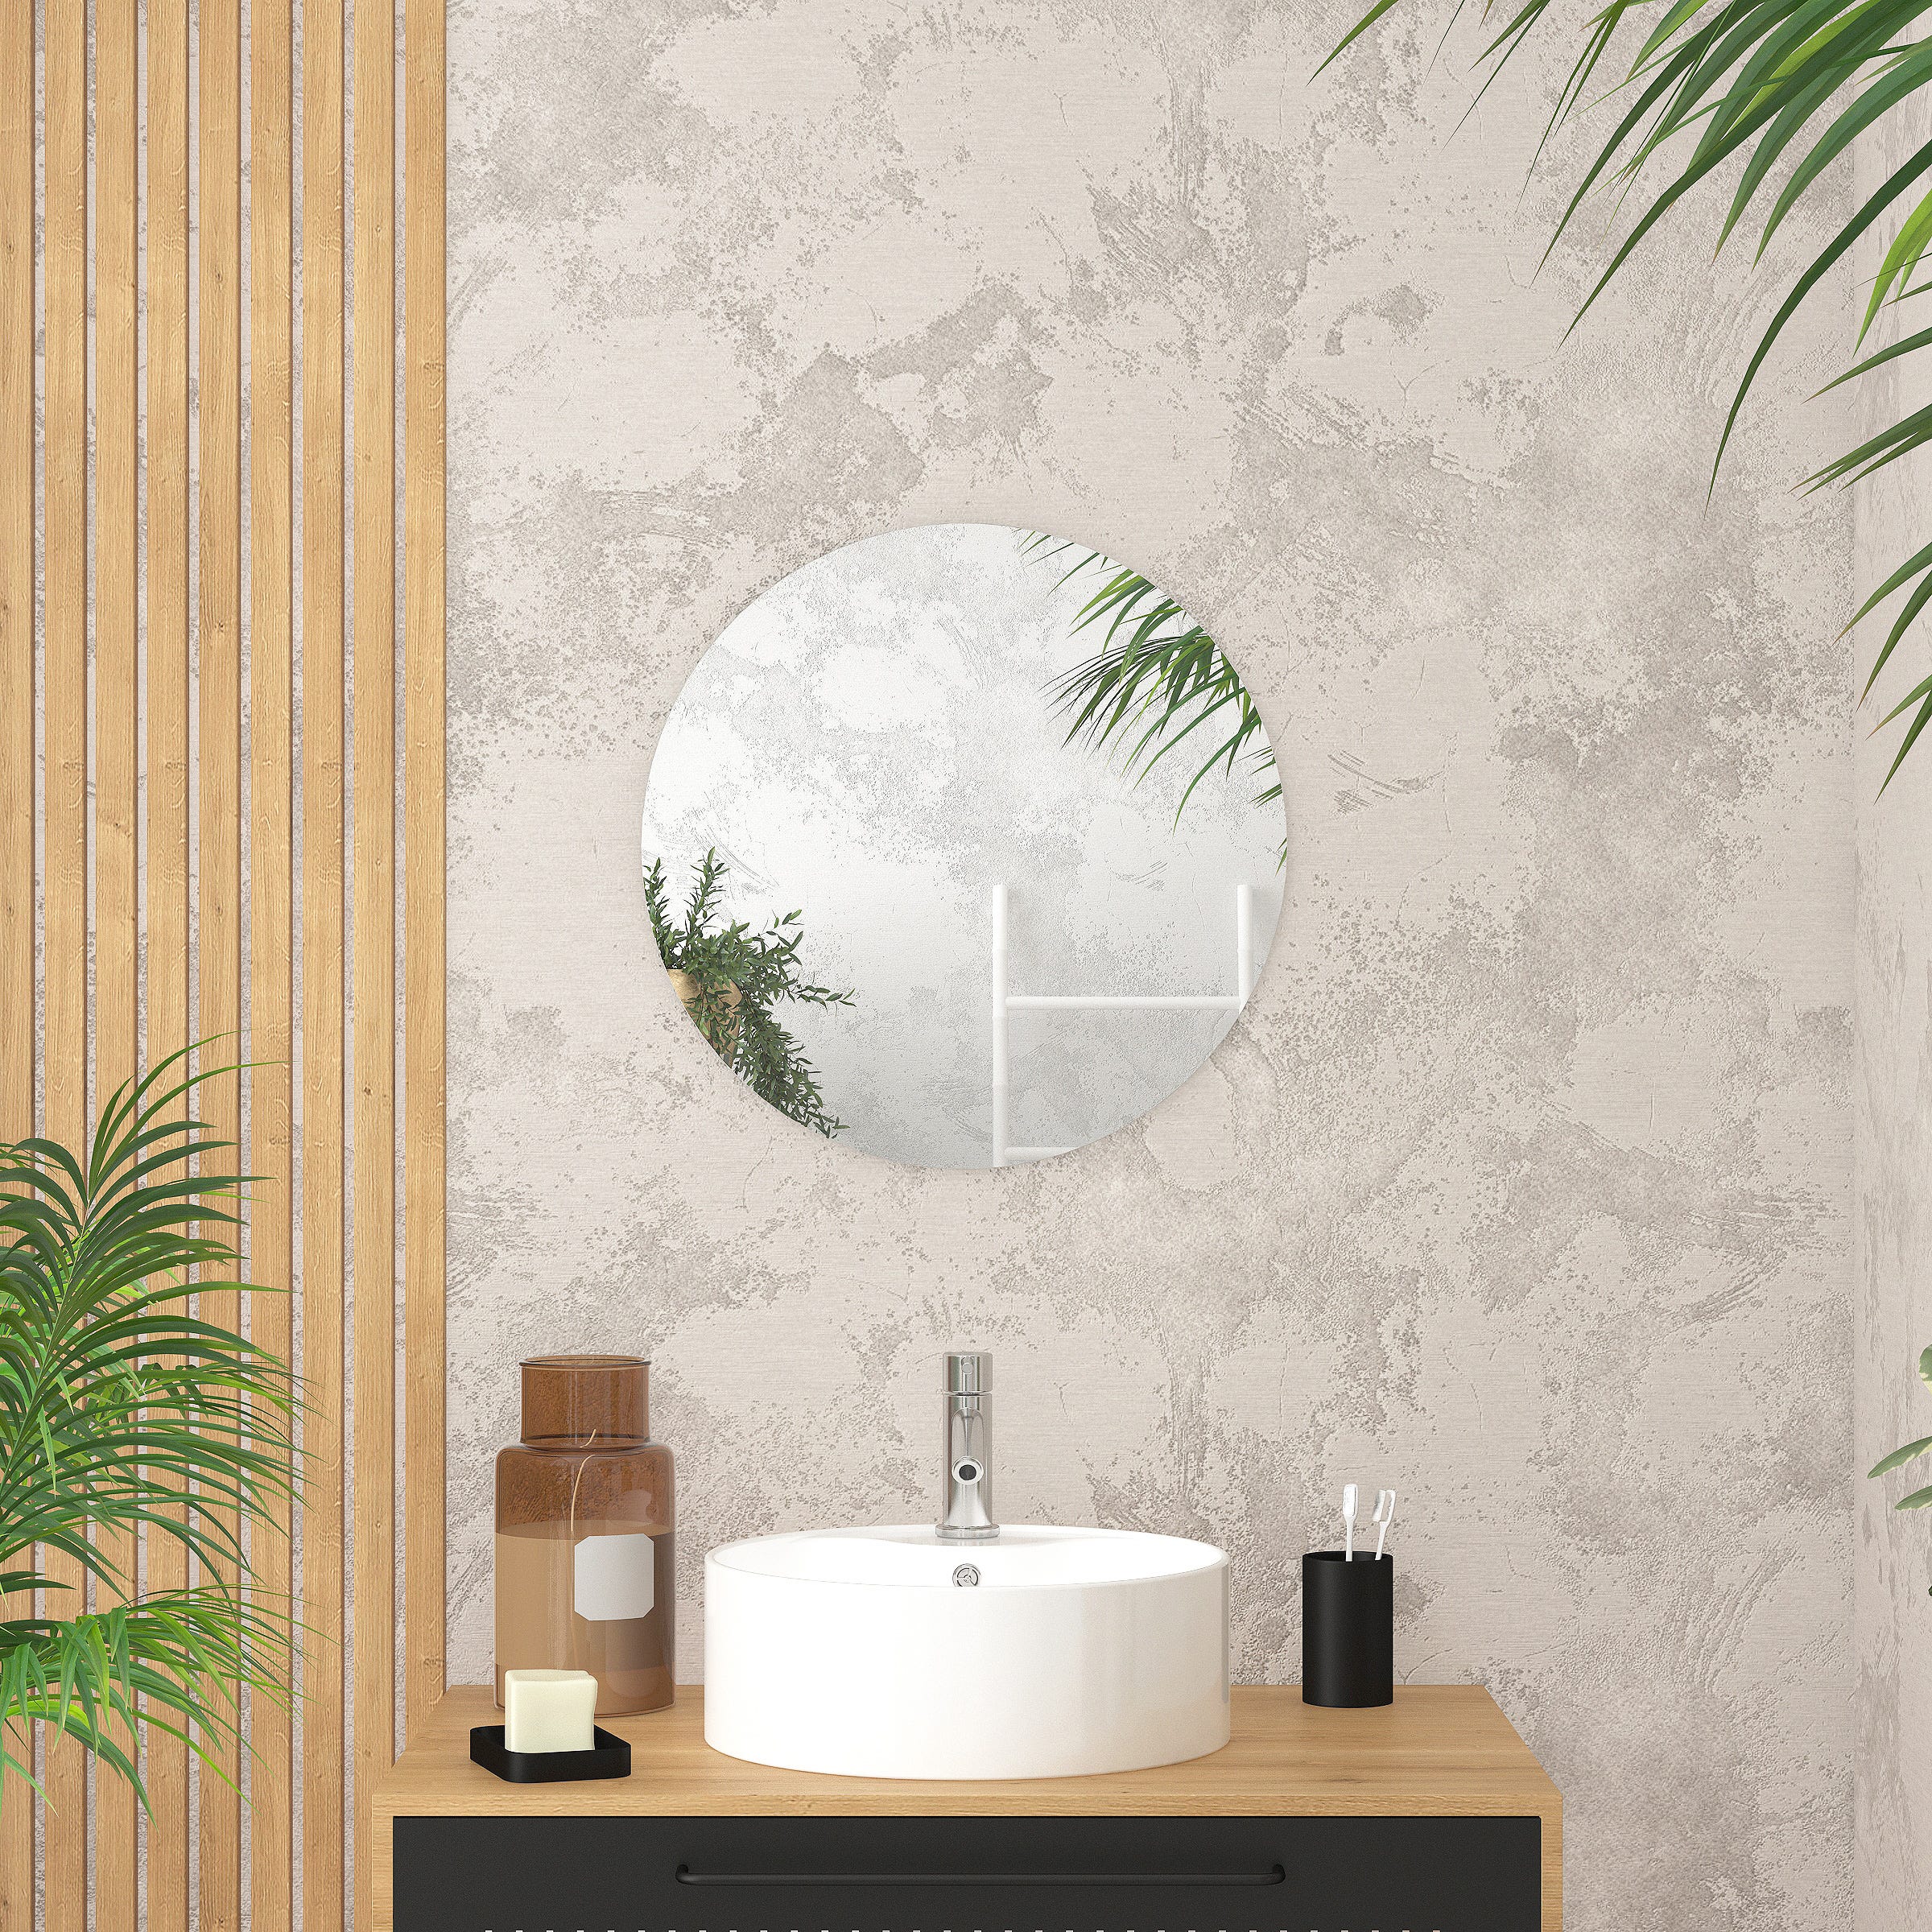 Miroir salle de bain LED angles ronds et bords finition blanc